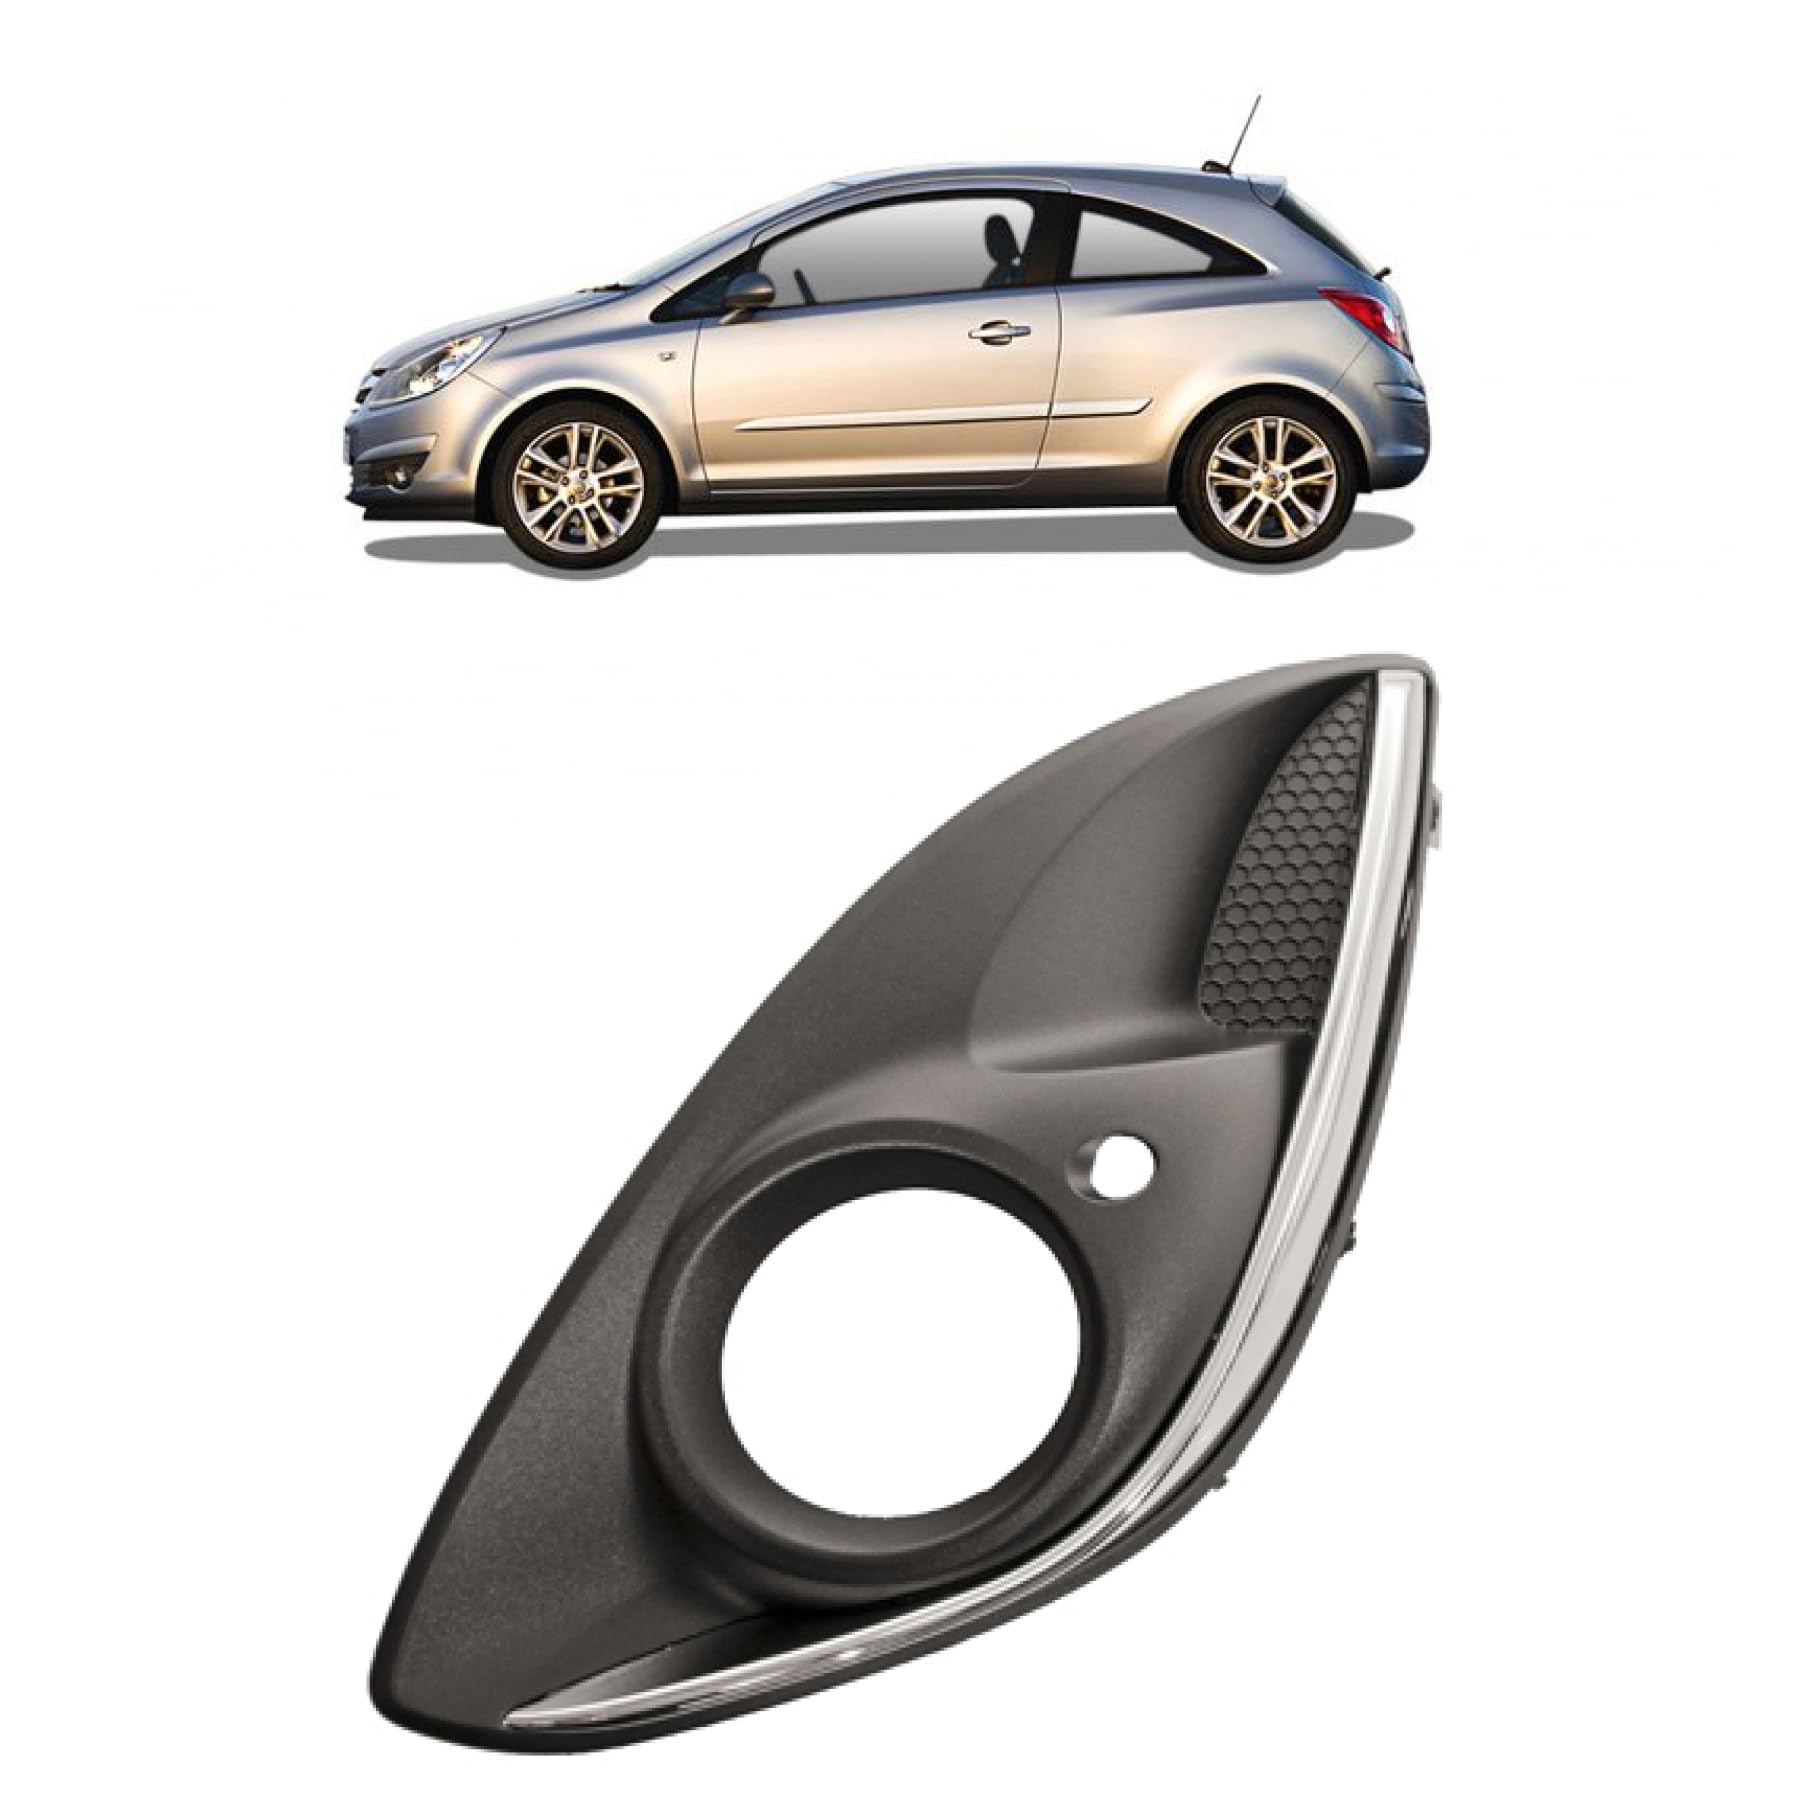 DM Autoteile 274357 Nebelscheinwerfer Gitter vorne links kompatibel für Opel Corsa D S07 Facelift Bj. 2011-2014 von DM Autoteile